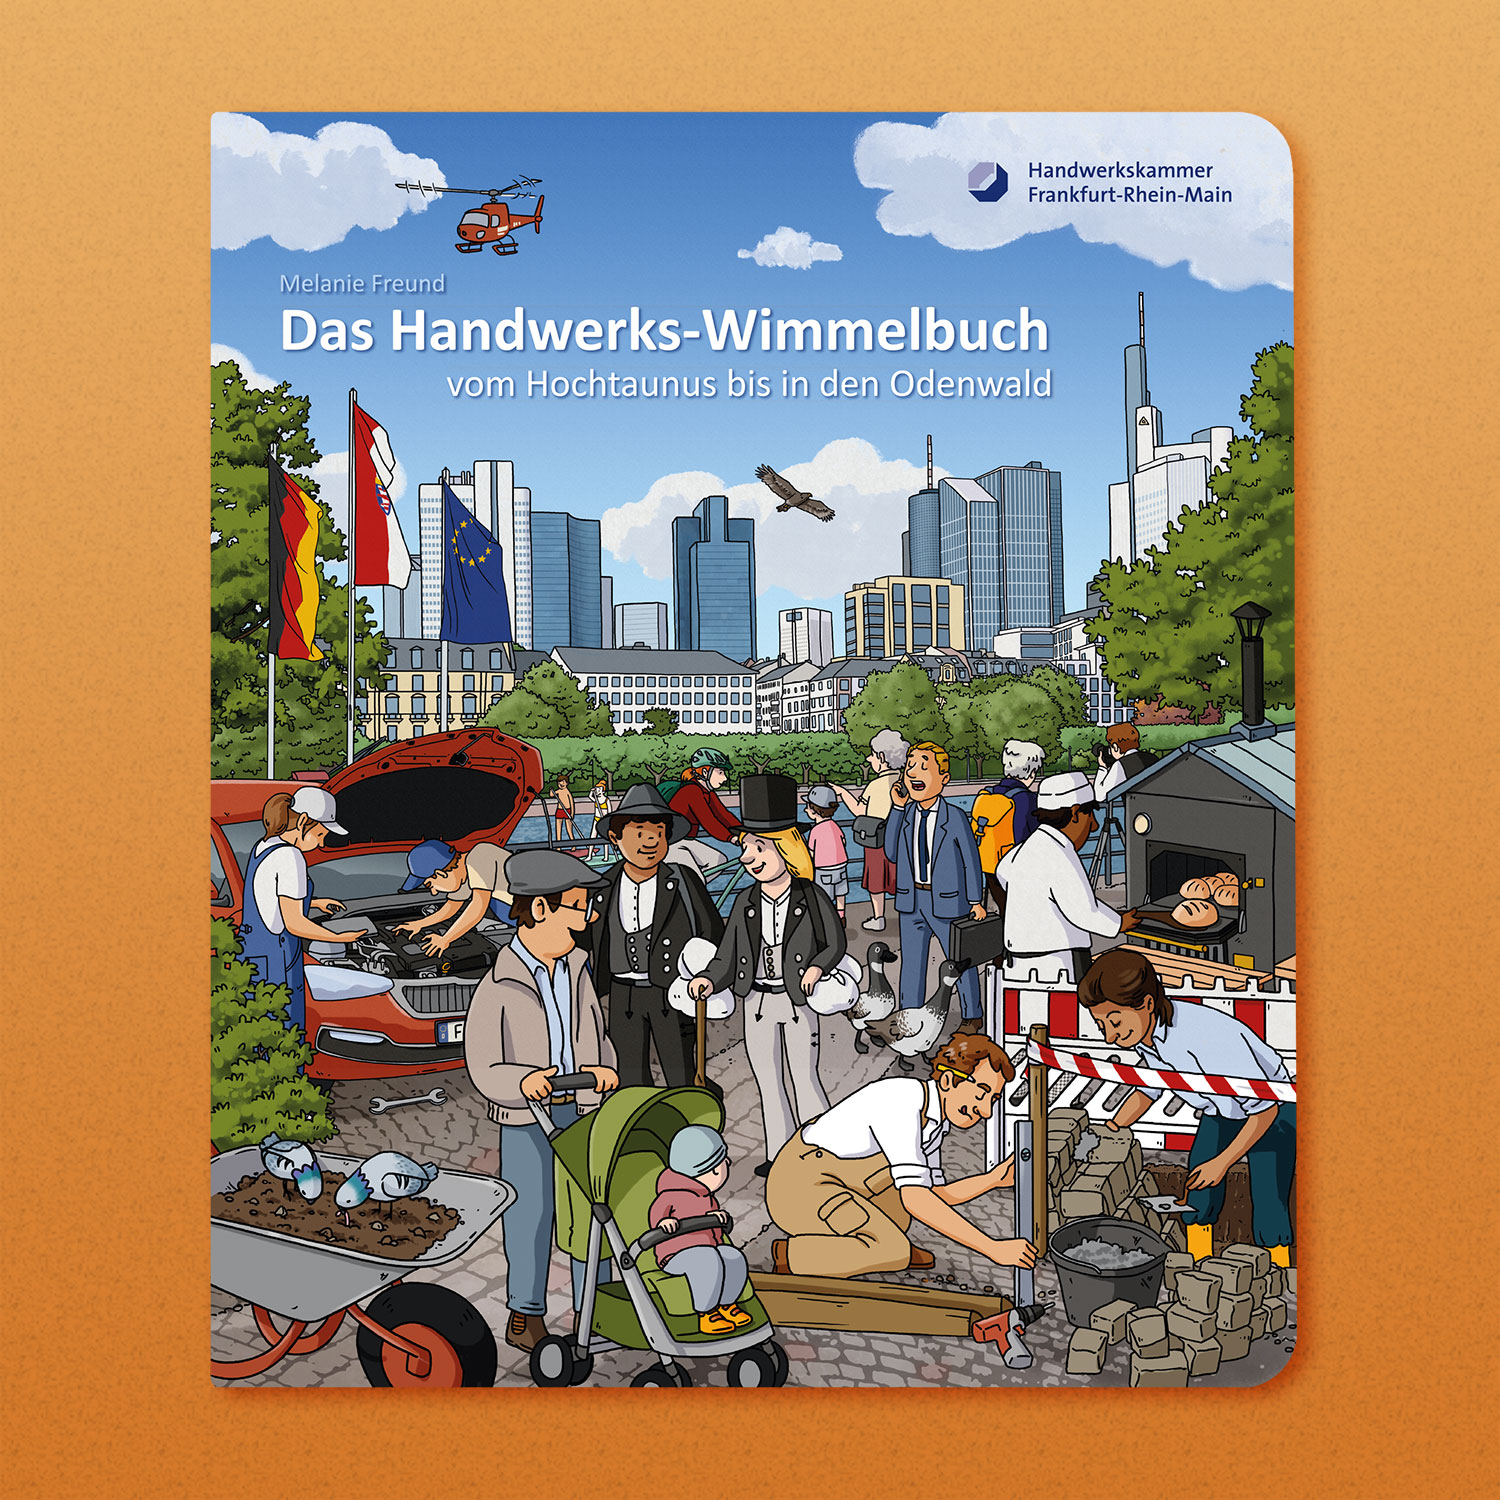 Das Handwerks-Wimmelbuch – Vom Hochtaunus bis in den Odenwald